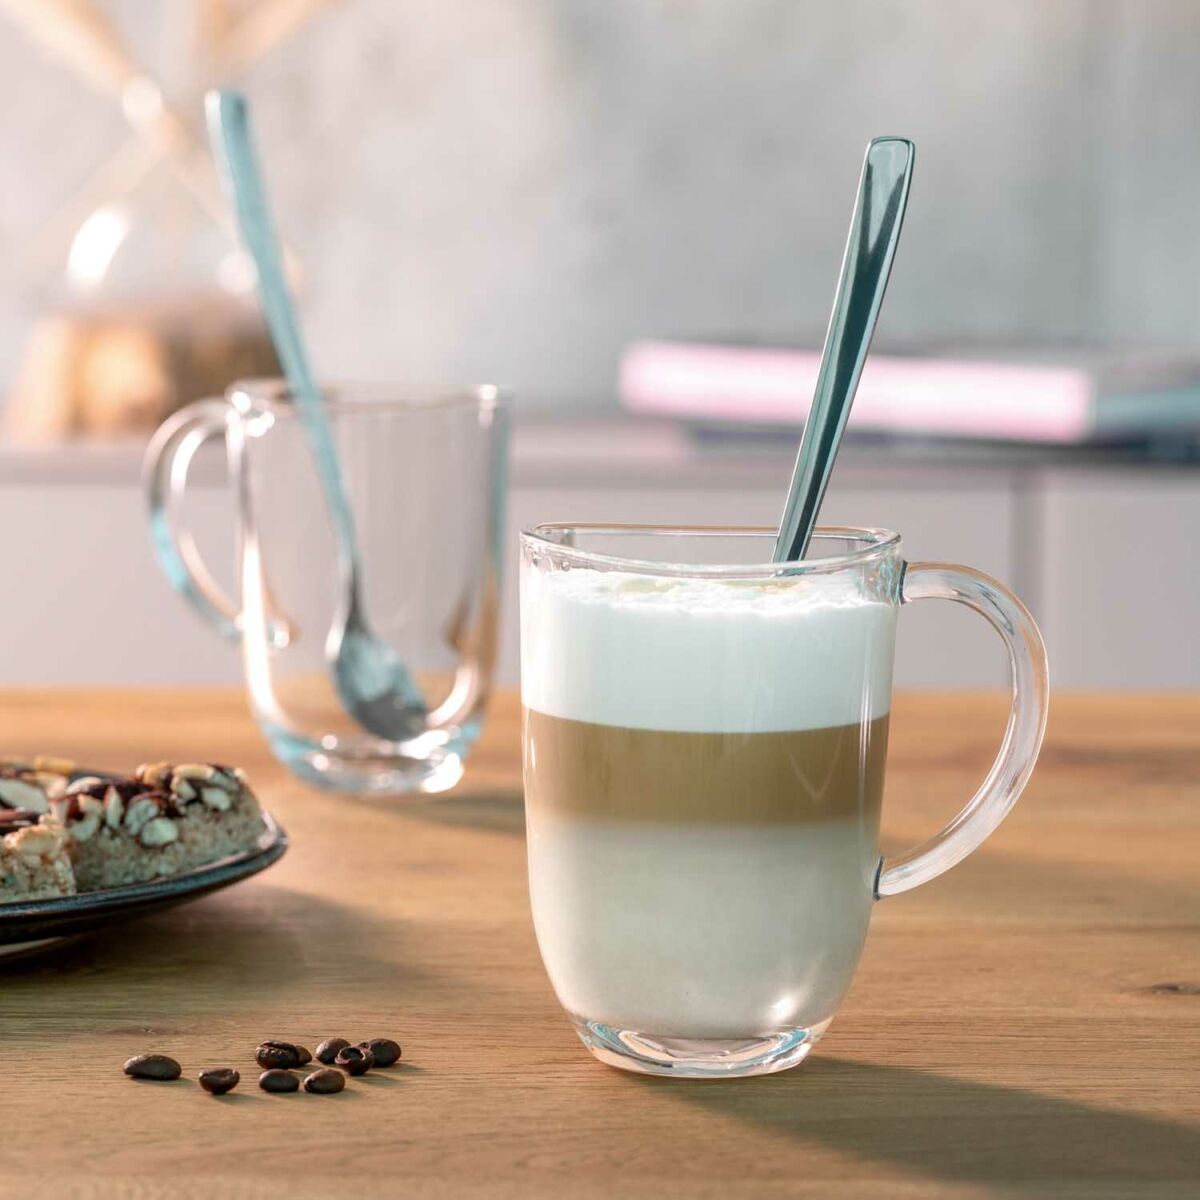 LEONARDO NAPOLI latte macchiatós szett kanállal 2személyes 4részes